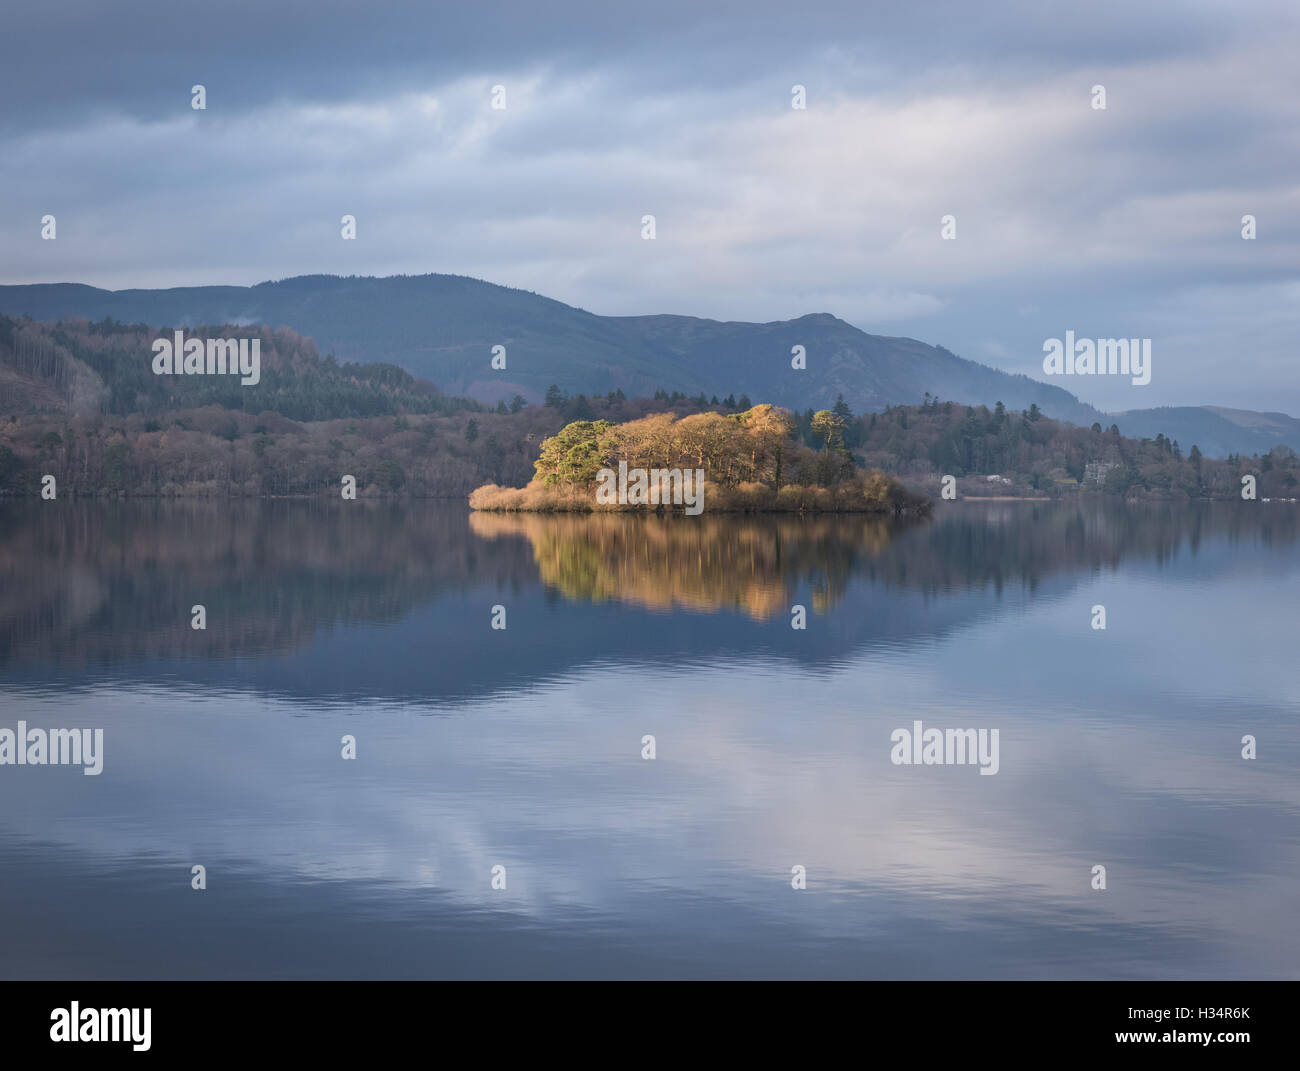 Rampsholme Island, Derwent Water, English Lake District national park, UK Stock Photo